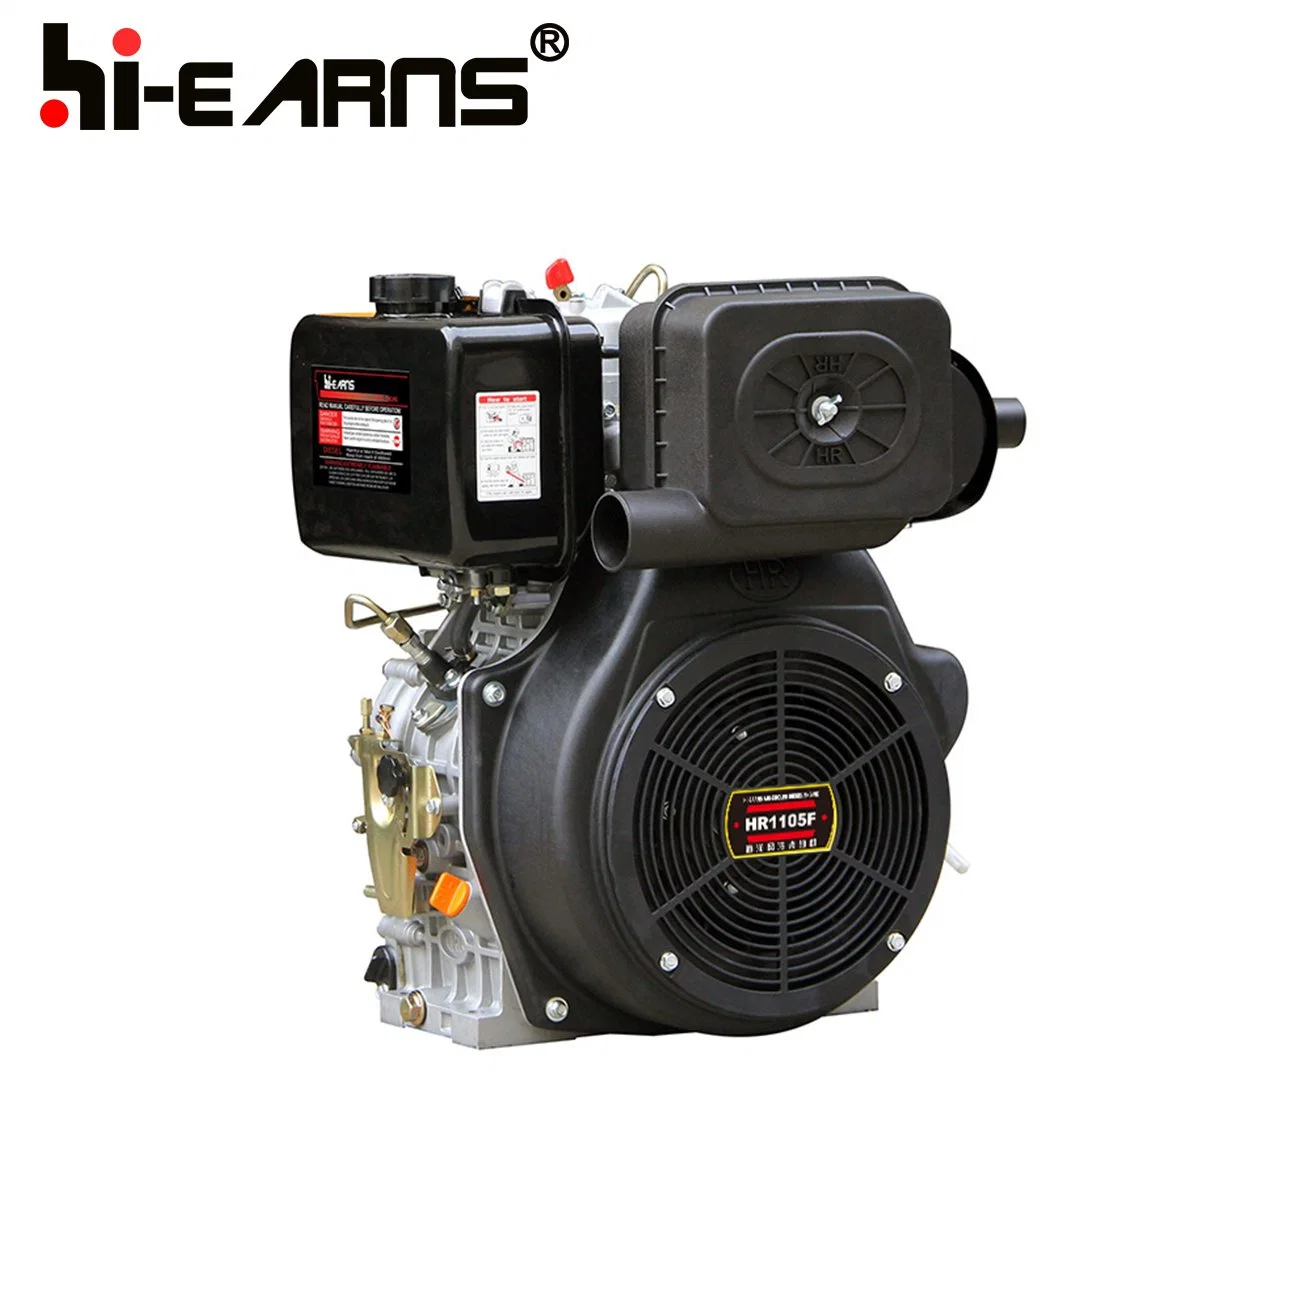 1105 1102 Single Cylinder Power Diesel Engine (HR1105FD) Basic Customization